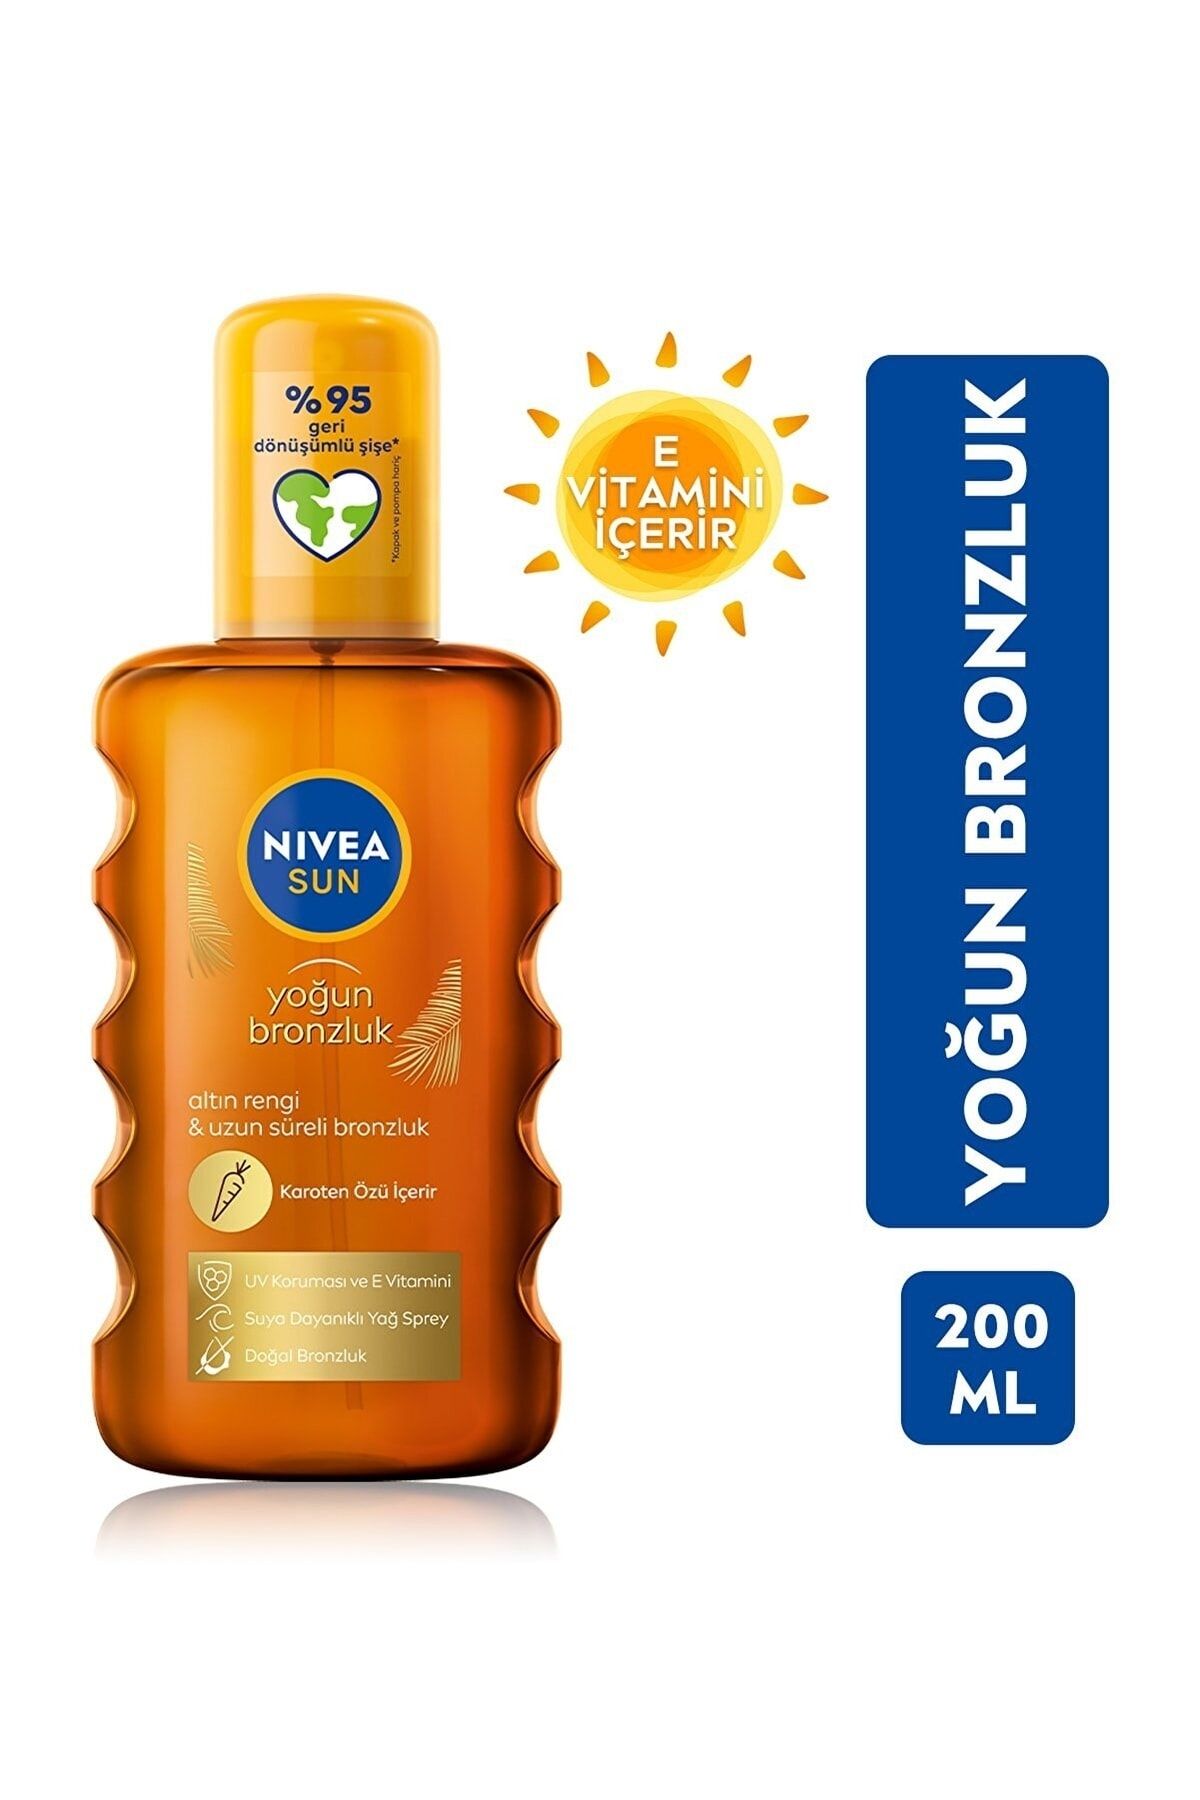 NIVEA Sun Spf 6 Yoğun Bronzlaştırıcı Güneş Yağ Sprey, Karoten Özlü, E Vitamini Içerir,yoğun Bronzluk